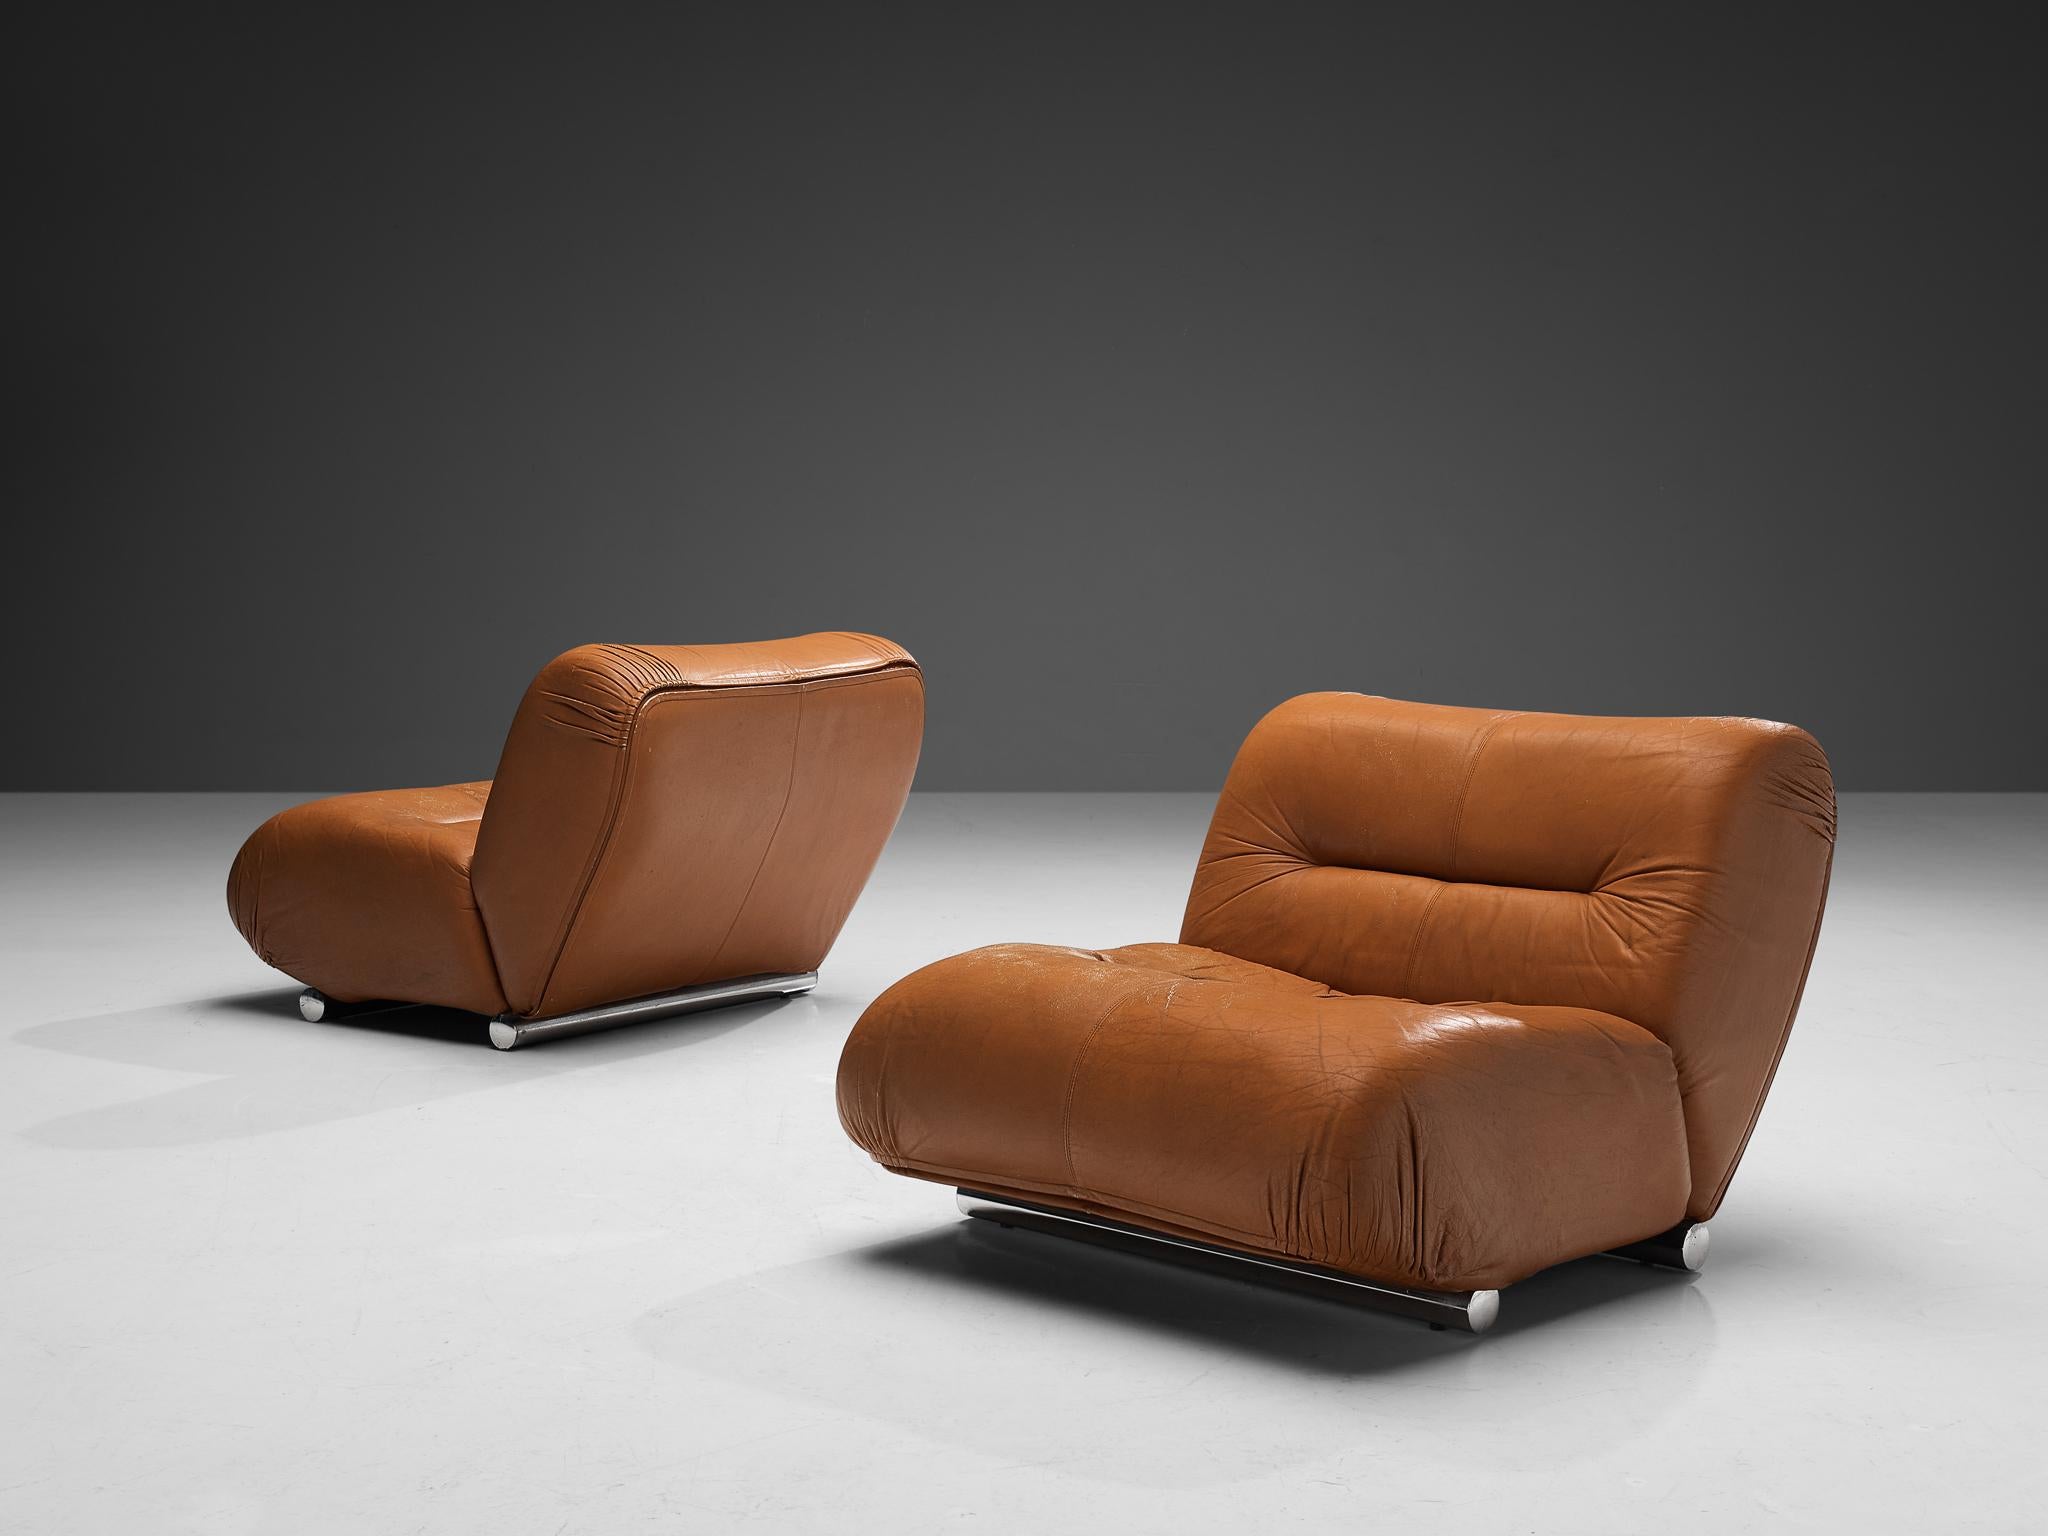 Giuseppe Munari, Sessel oder Sektionssofa, Leder, verchromter Stahl, Italien, 1970er Jahre

Dieser Entwurf zeichnet sich durch eine L-förmige Form aus, die auf zwei getufteten Kissen basiert, die miteinander verbunden sind. Dies verleiht dem Stuhl